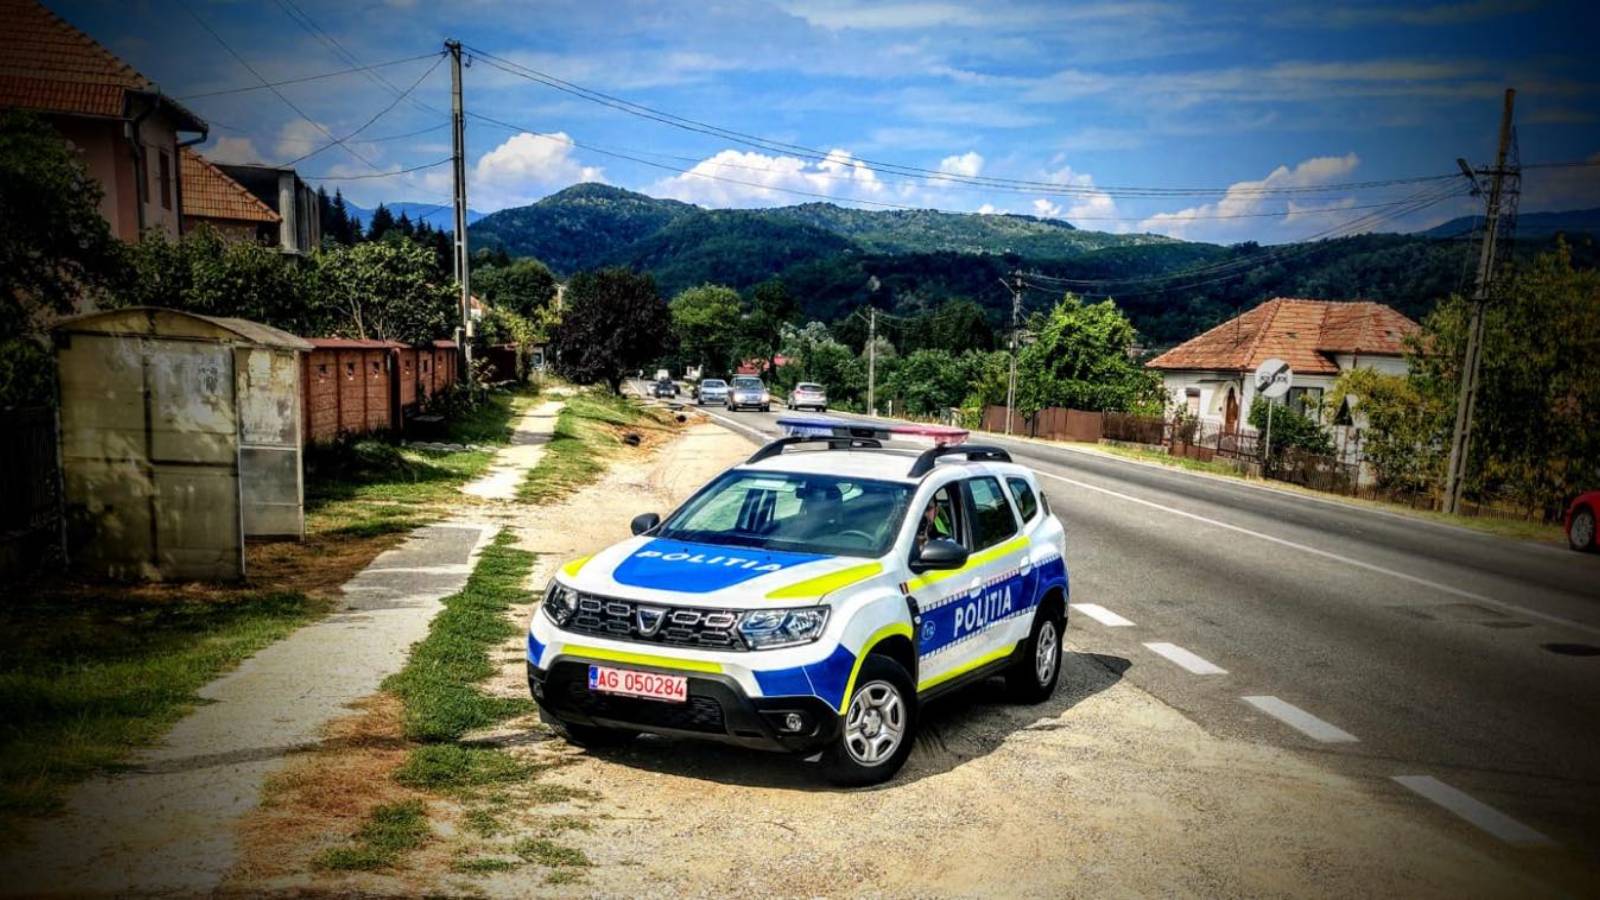 Policía inmobiliaria rumana